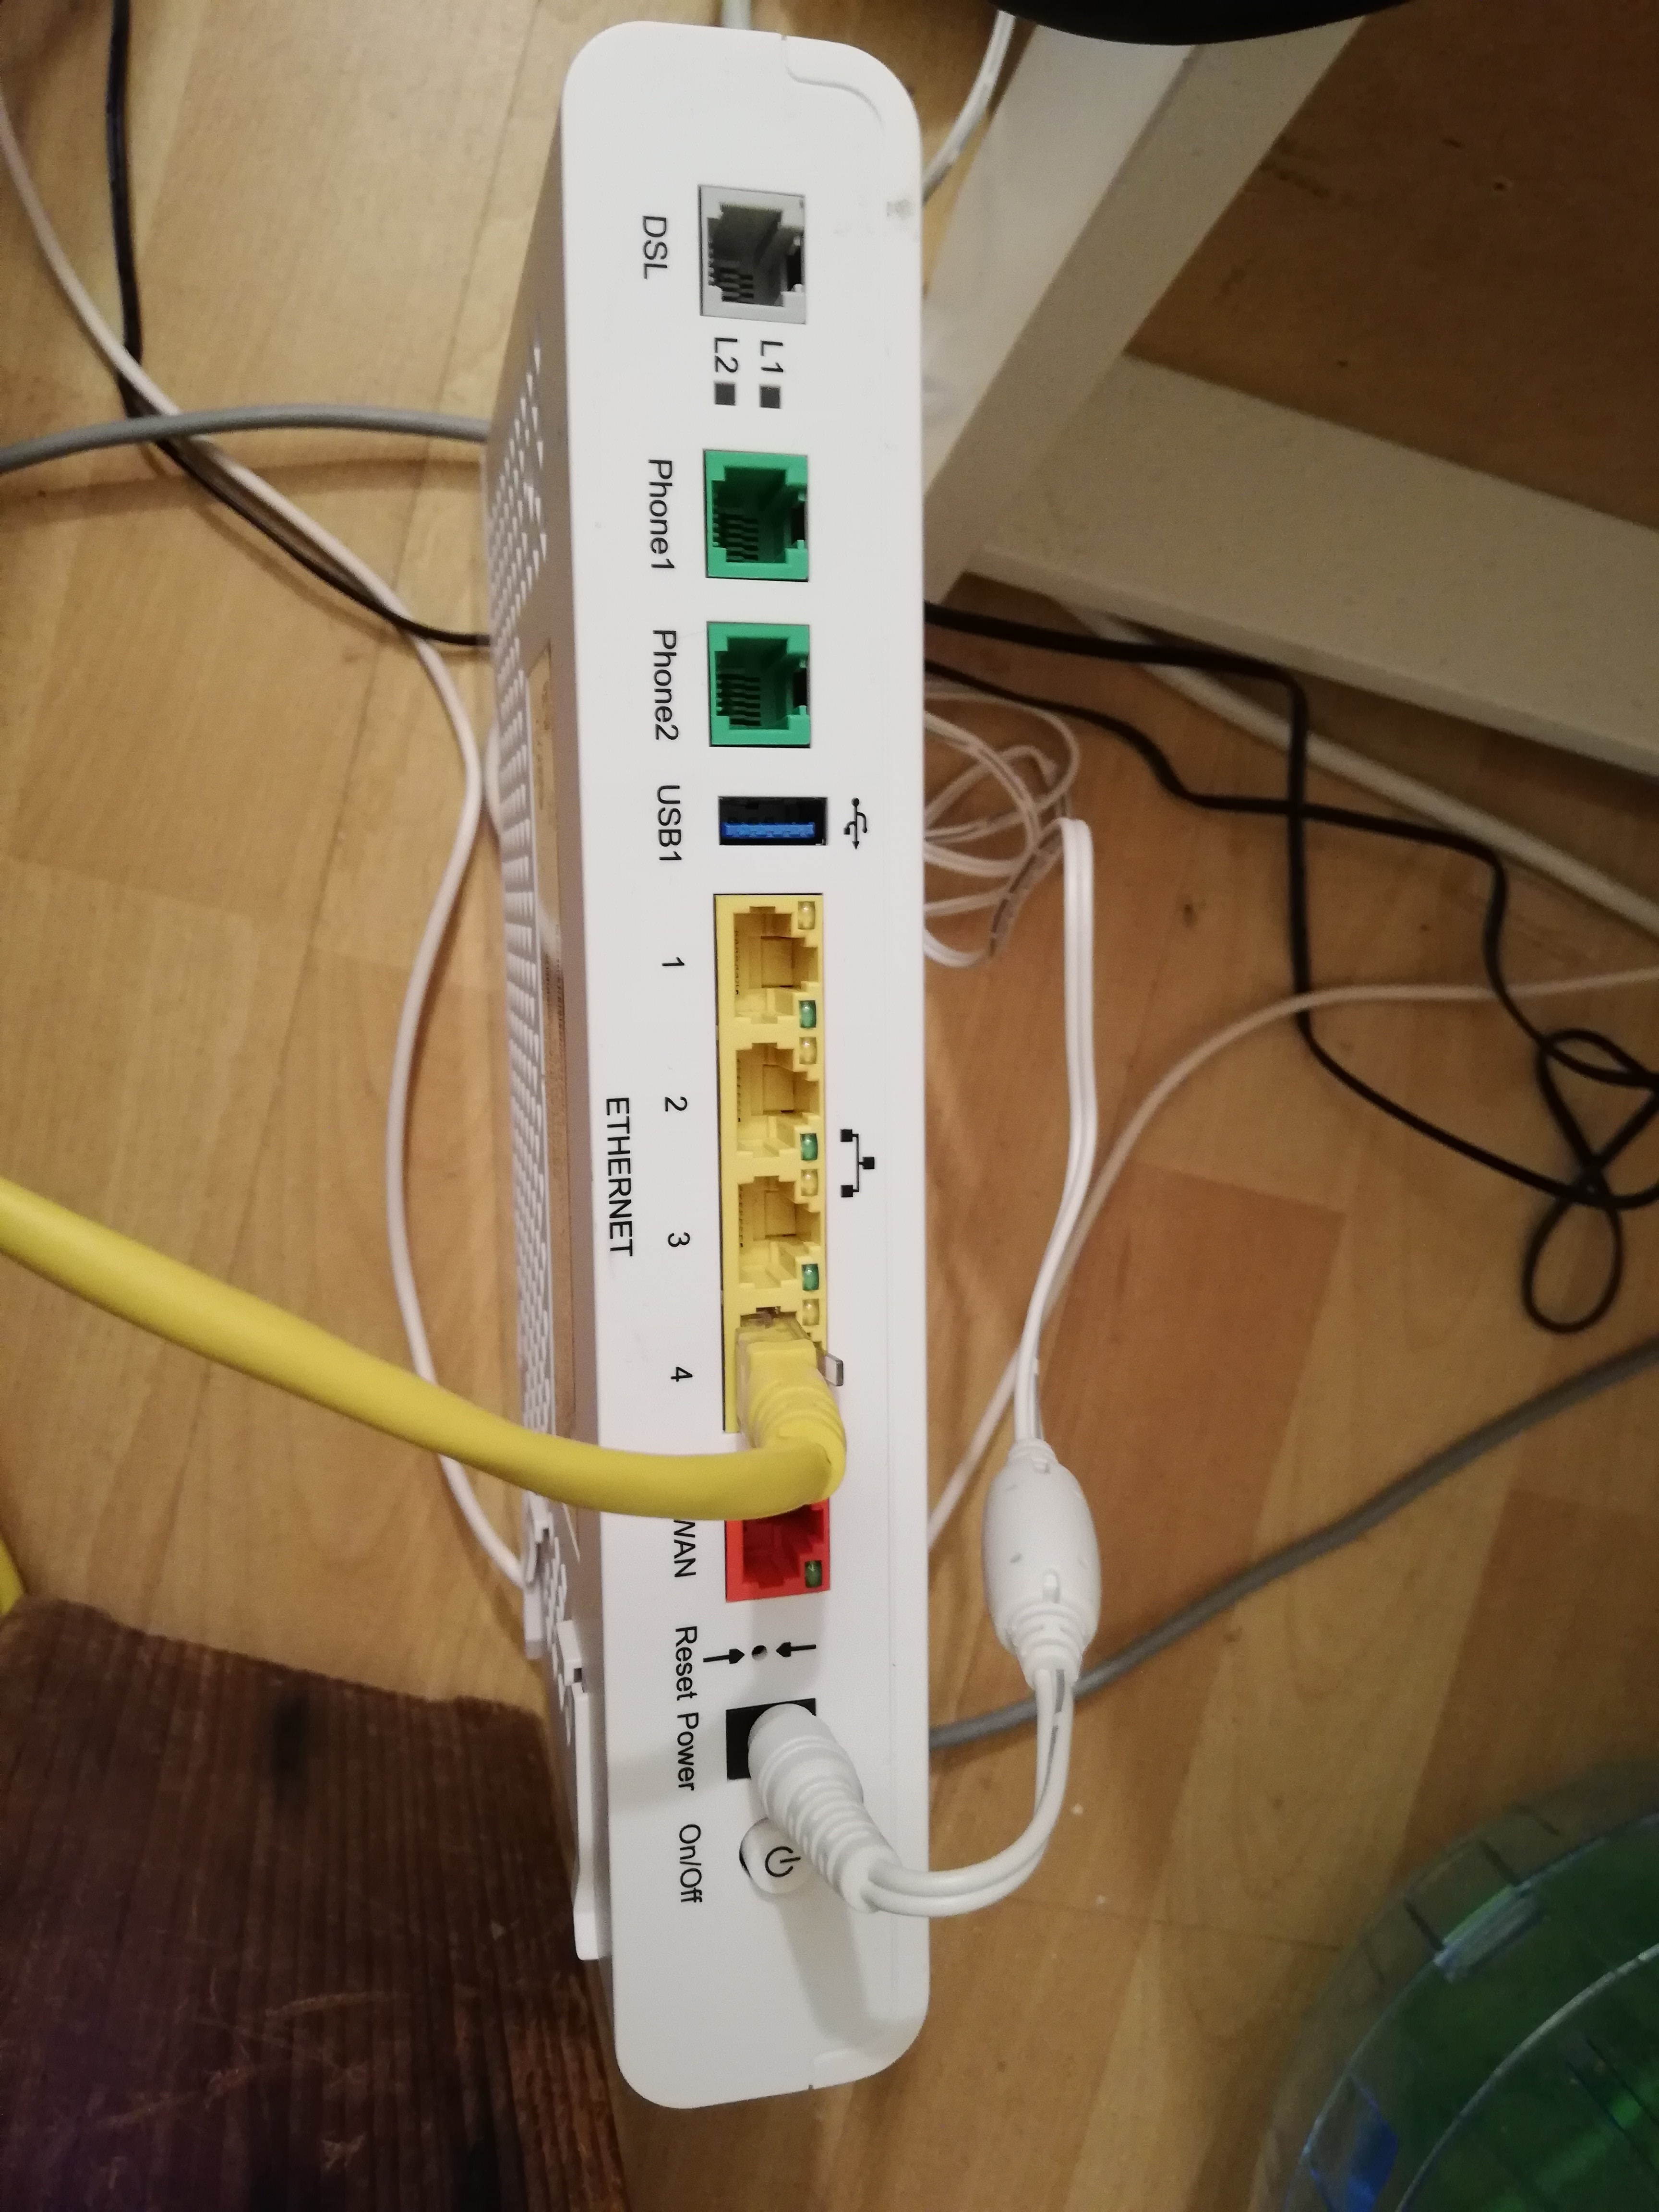 hybride Gezichtsvermogen te rechtvaardigen Experia V10 ipv V12, maar kabels passen niet | KPN Community